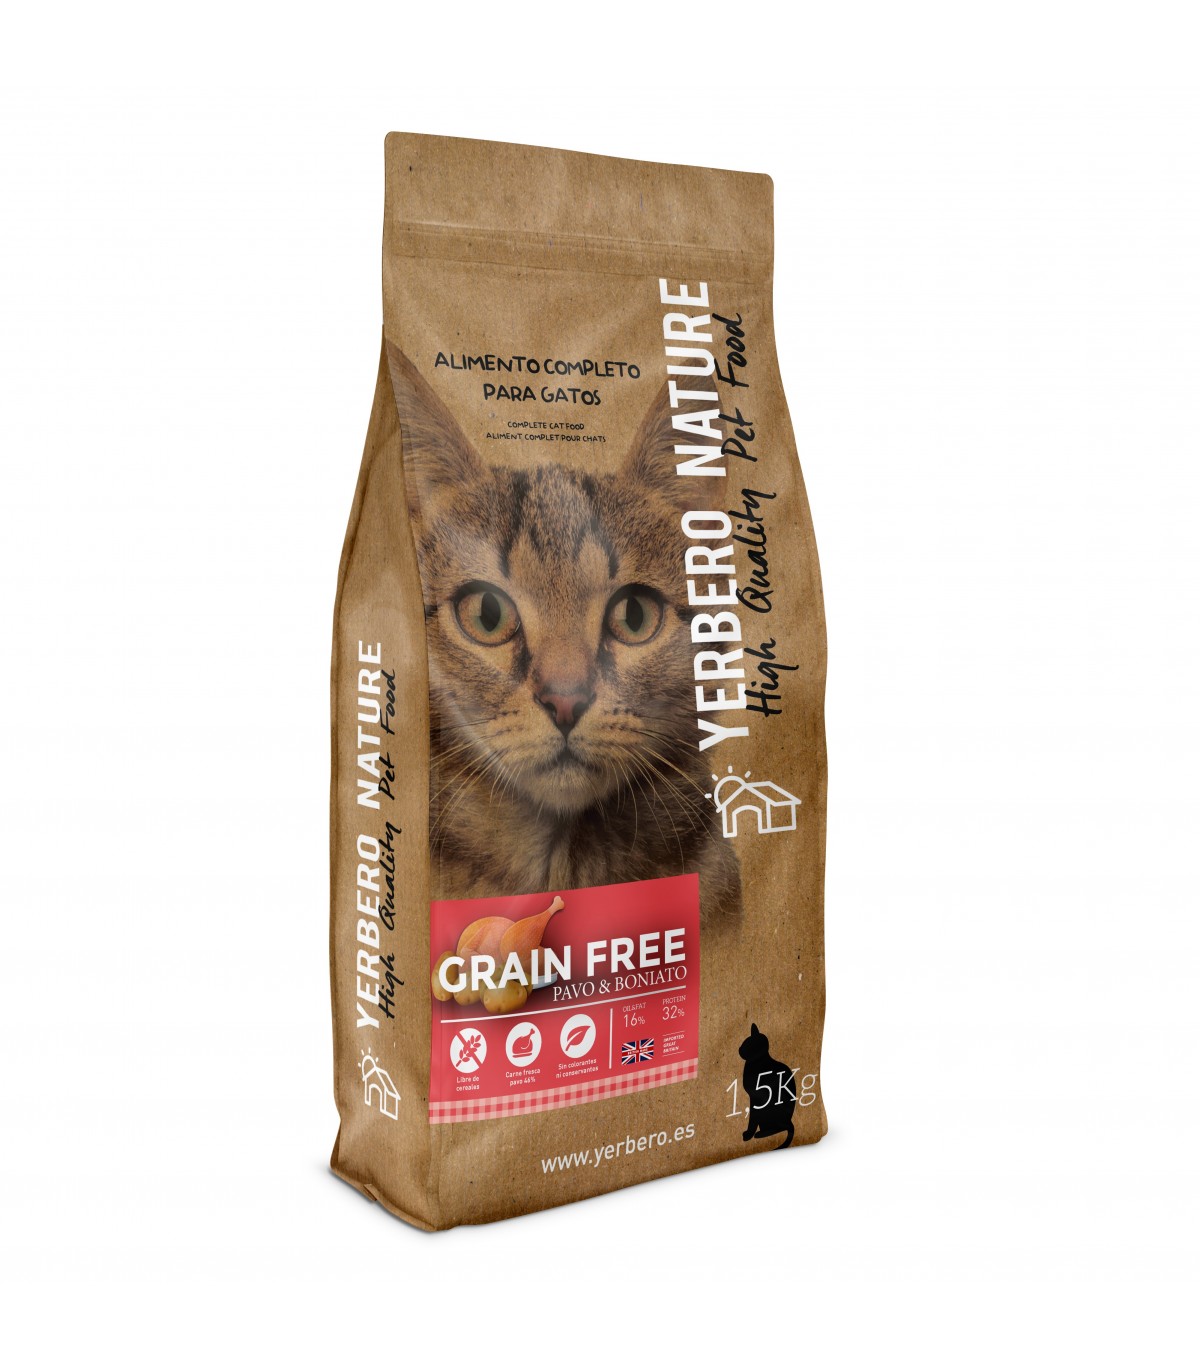 Grain free Cat Food